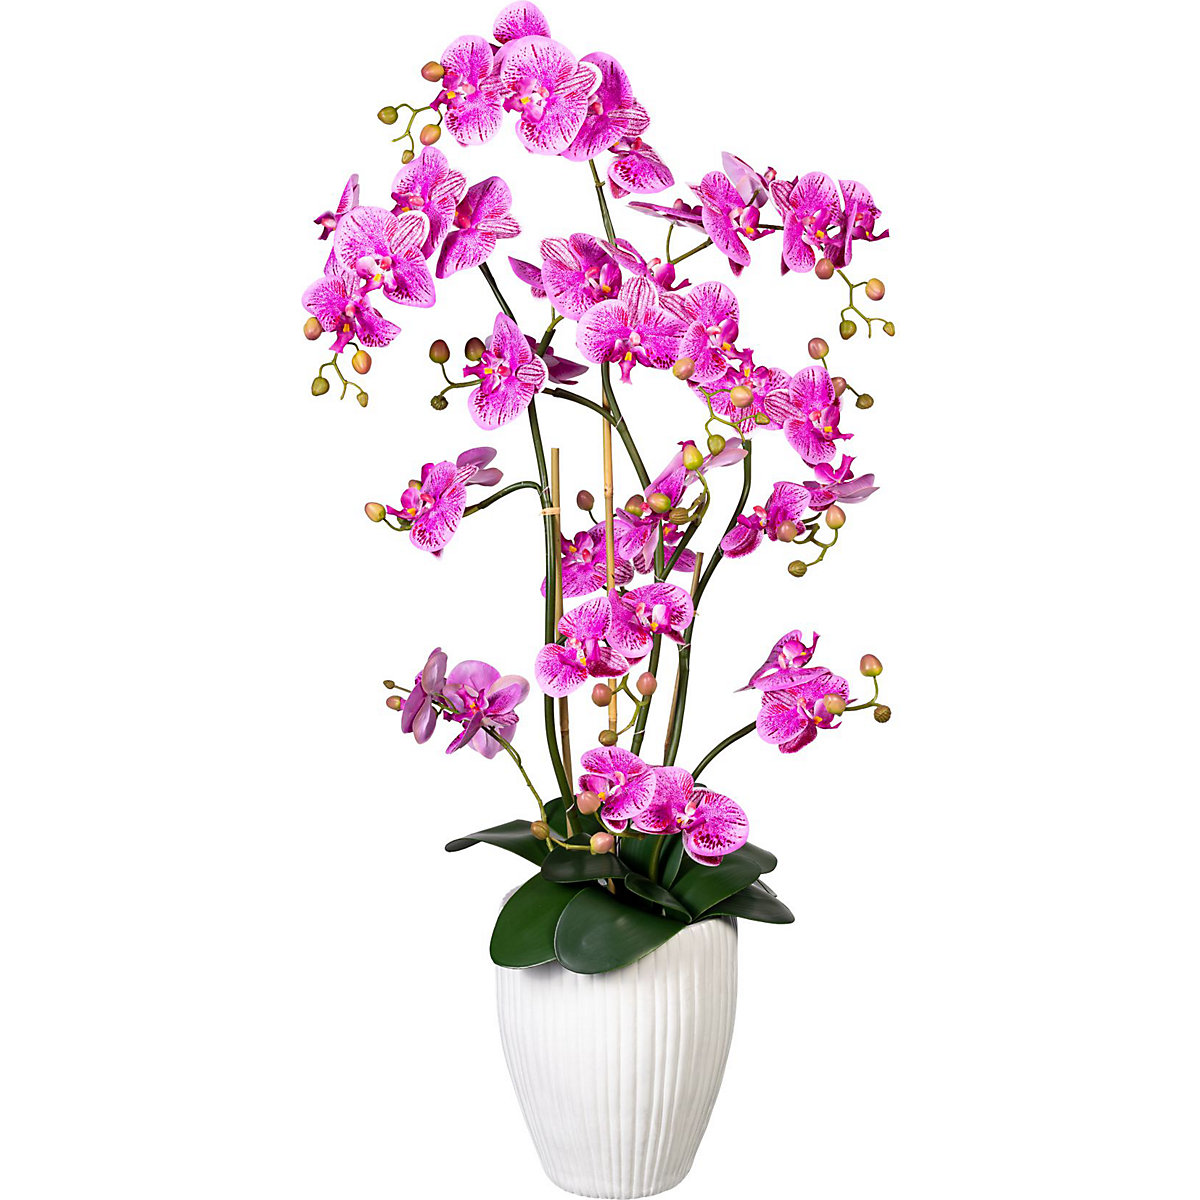 Orquídea Phalaenopsis, toque real